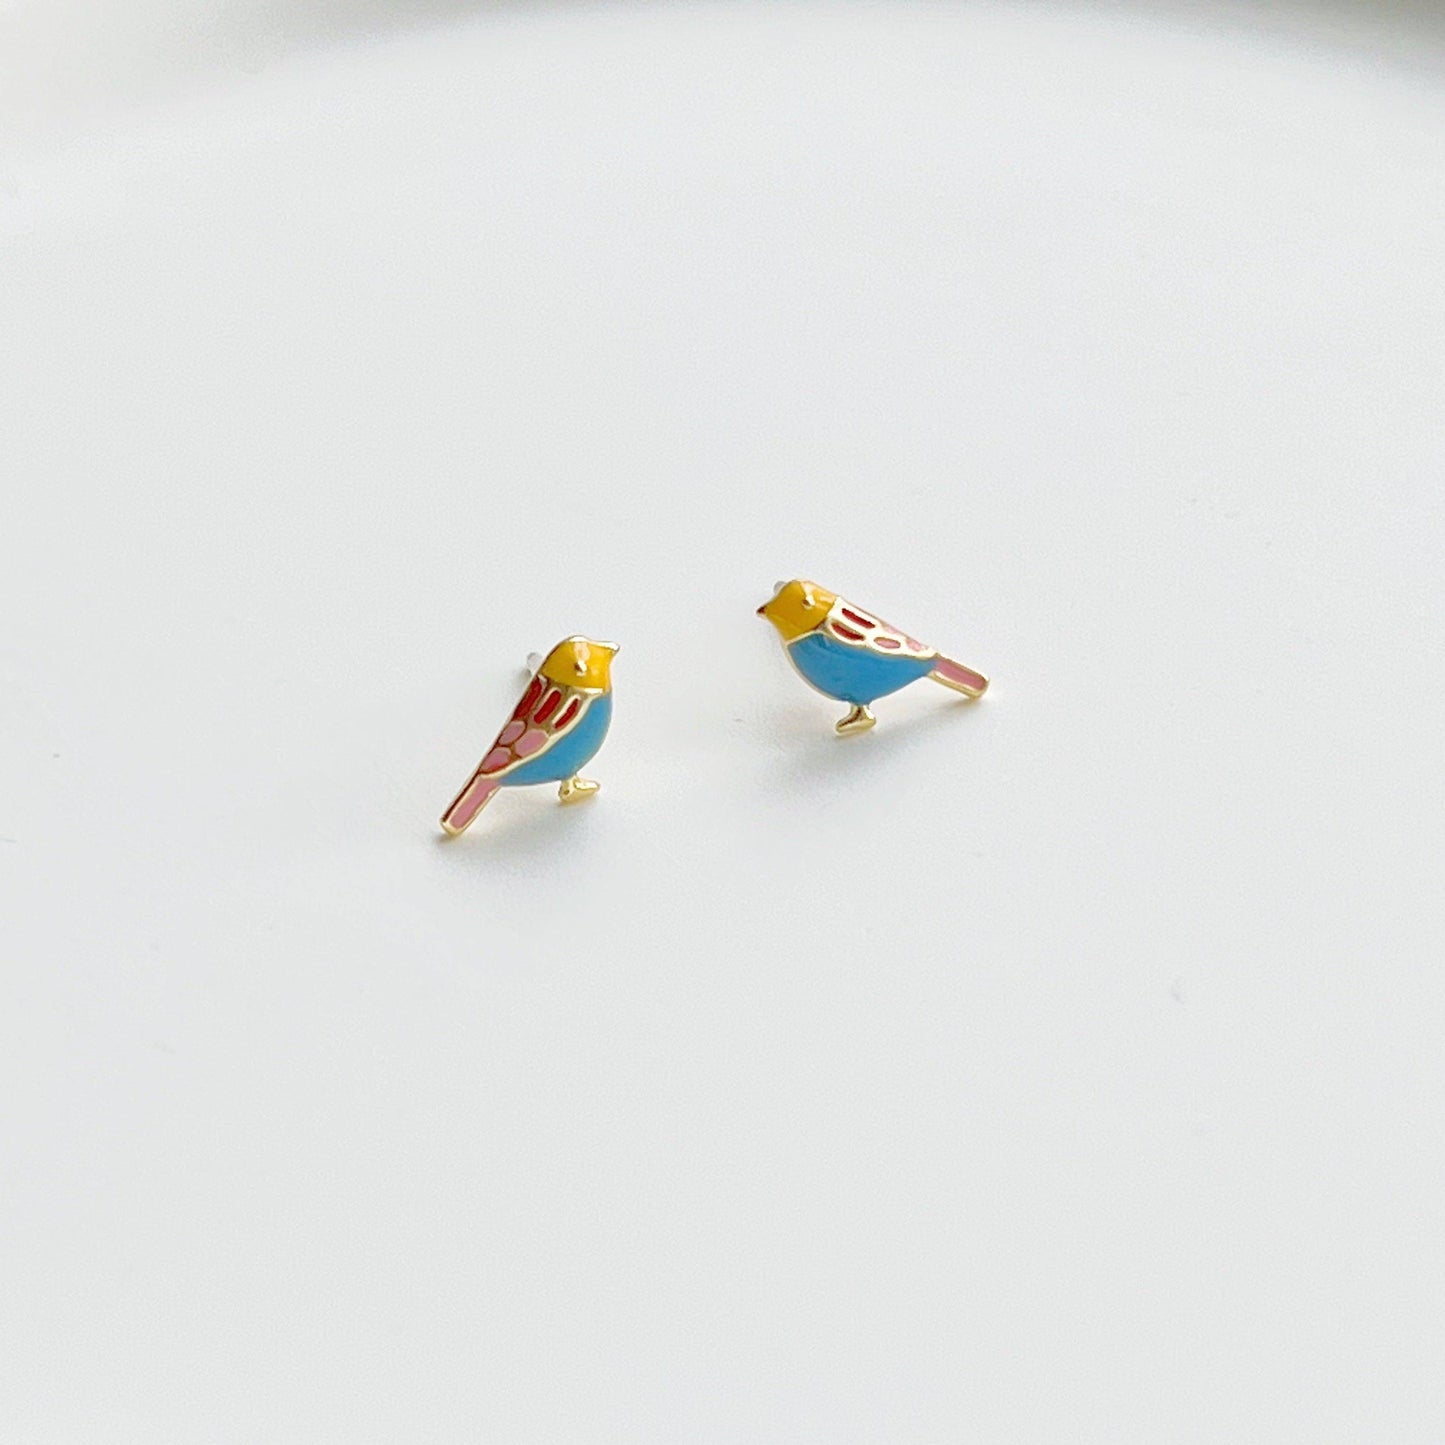 Blue Robin earrings - Tiny Lucky Bird Shape Sterling Silver Stud Earrings-Ninaouity